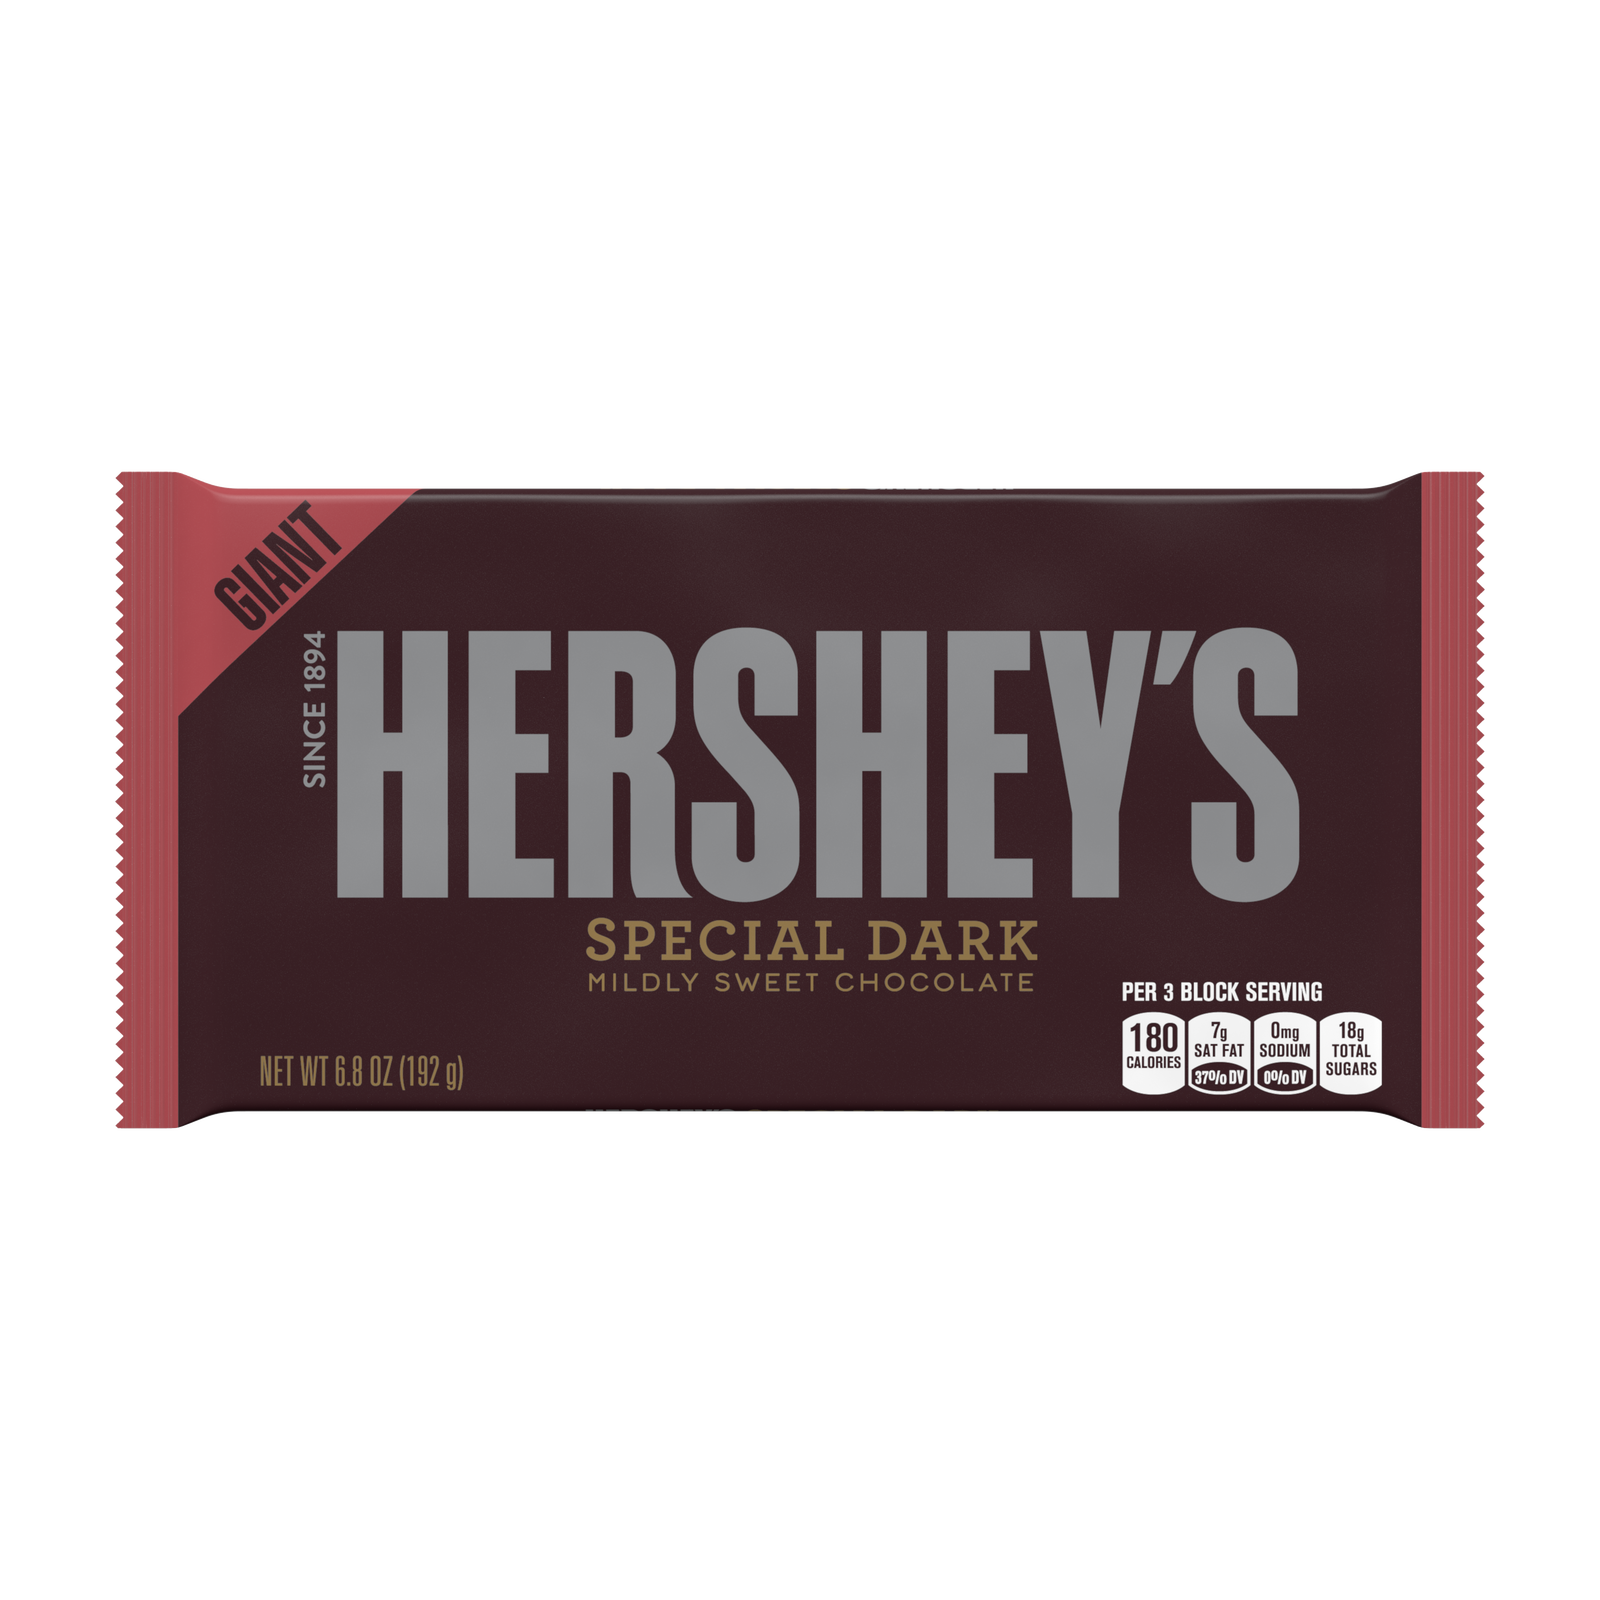 Giant Hershey's Special Dark Chocolate Bar, 6.8oz